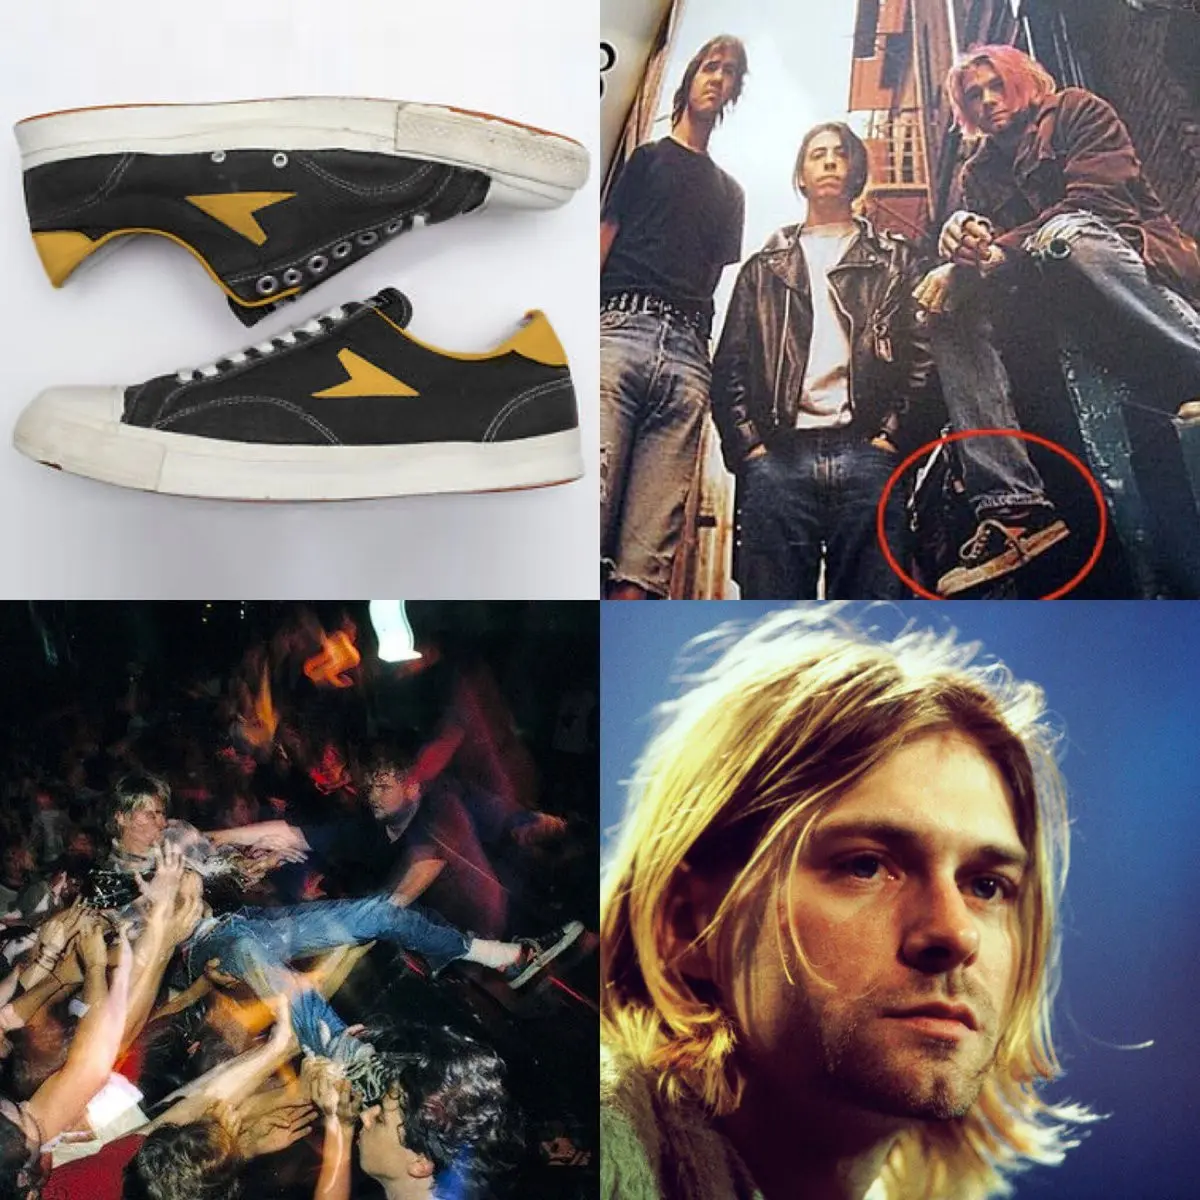 Sesi foto Nirvana ketika mendiang Kurt Cobain memakai sepatu Bata. (Twitter)